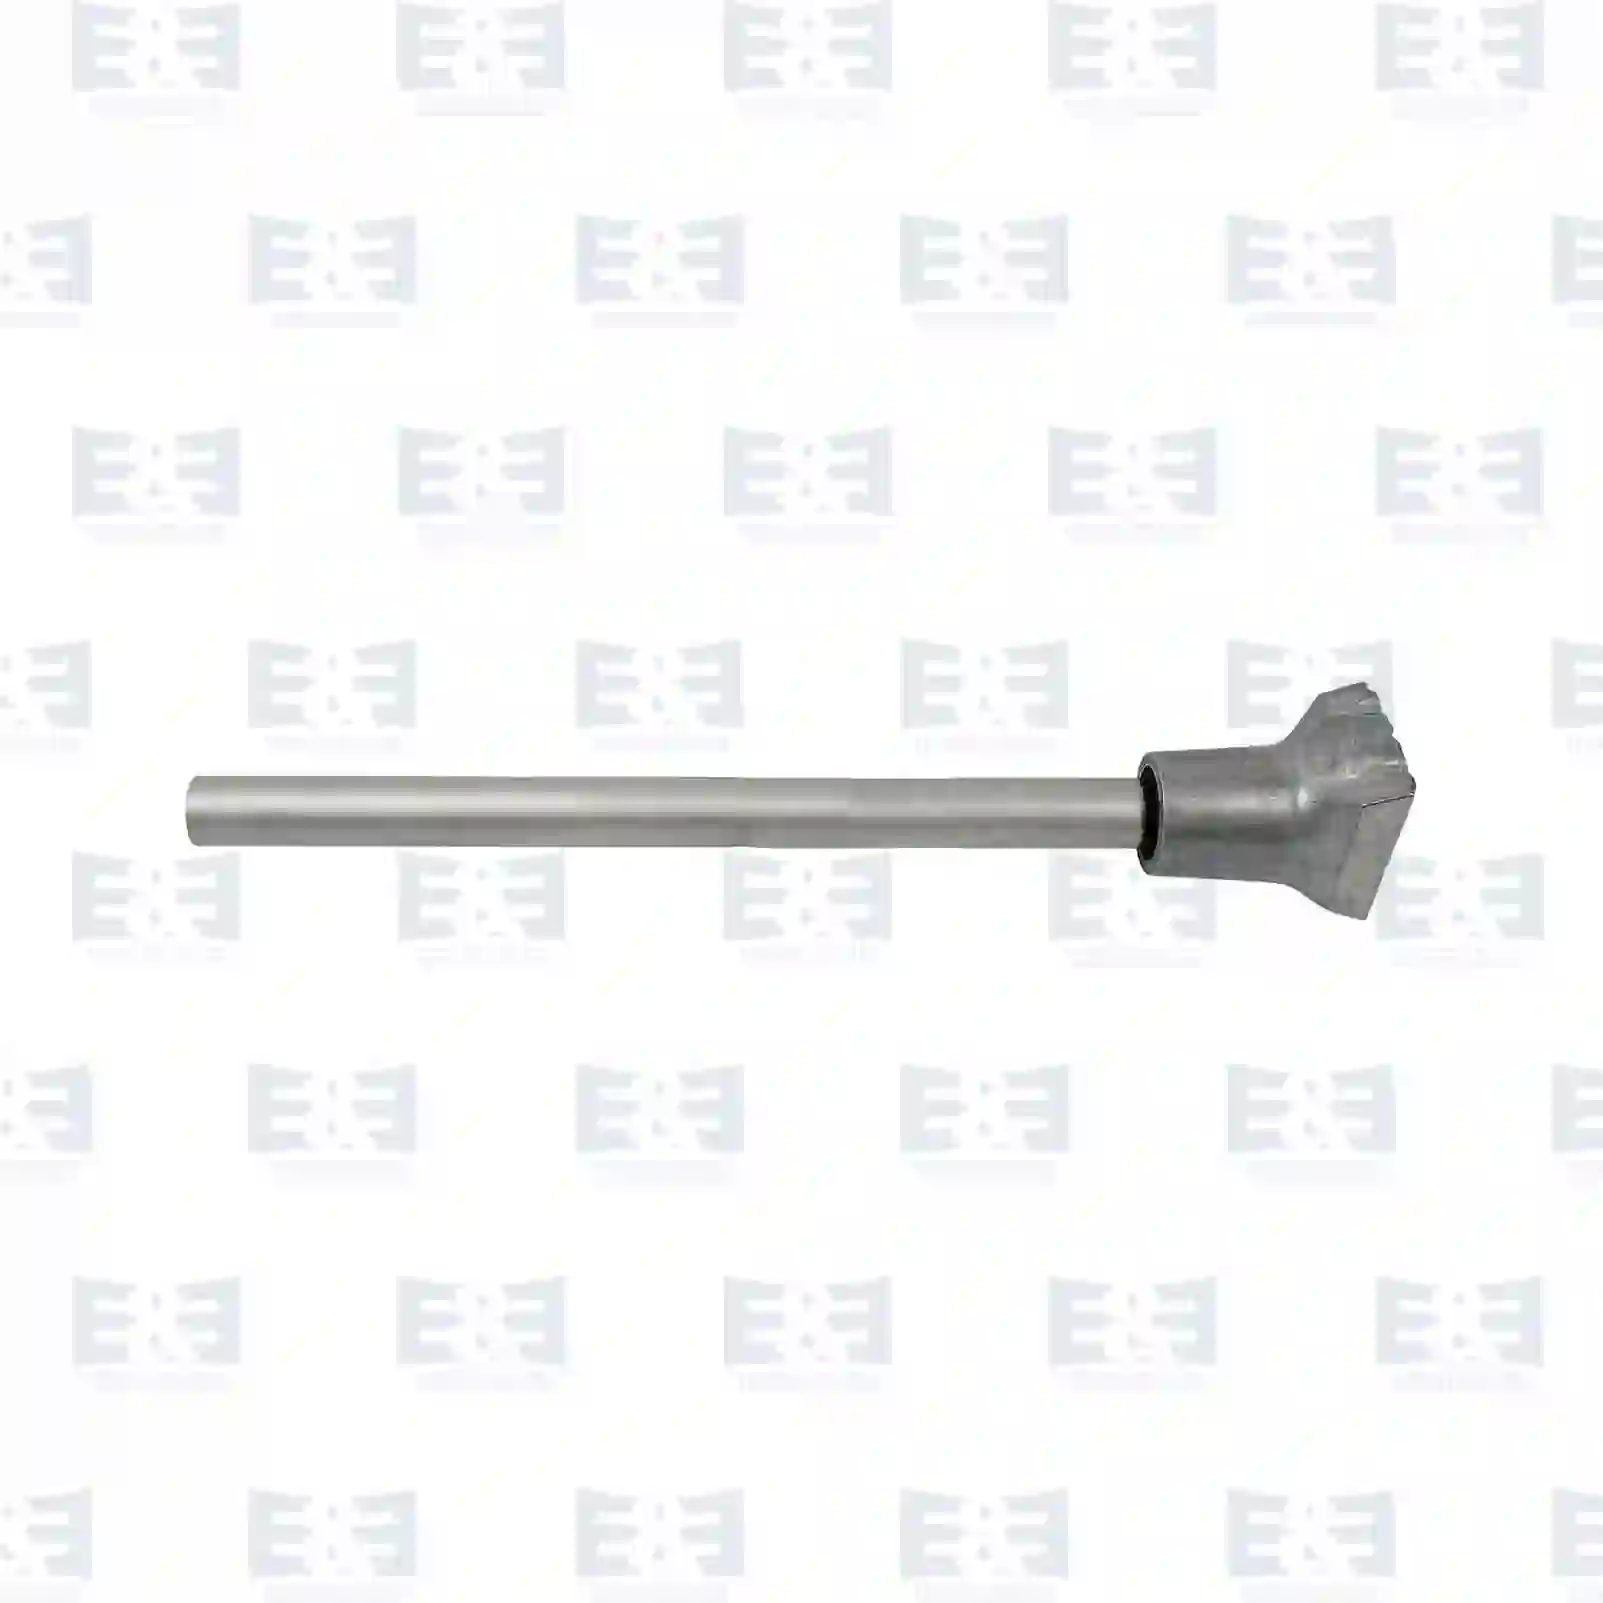  Fender bracket || E&E Truck Spare Parts | Truck Spare Parts, Auotomotive Spare Parts